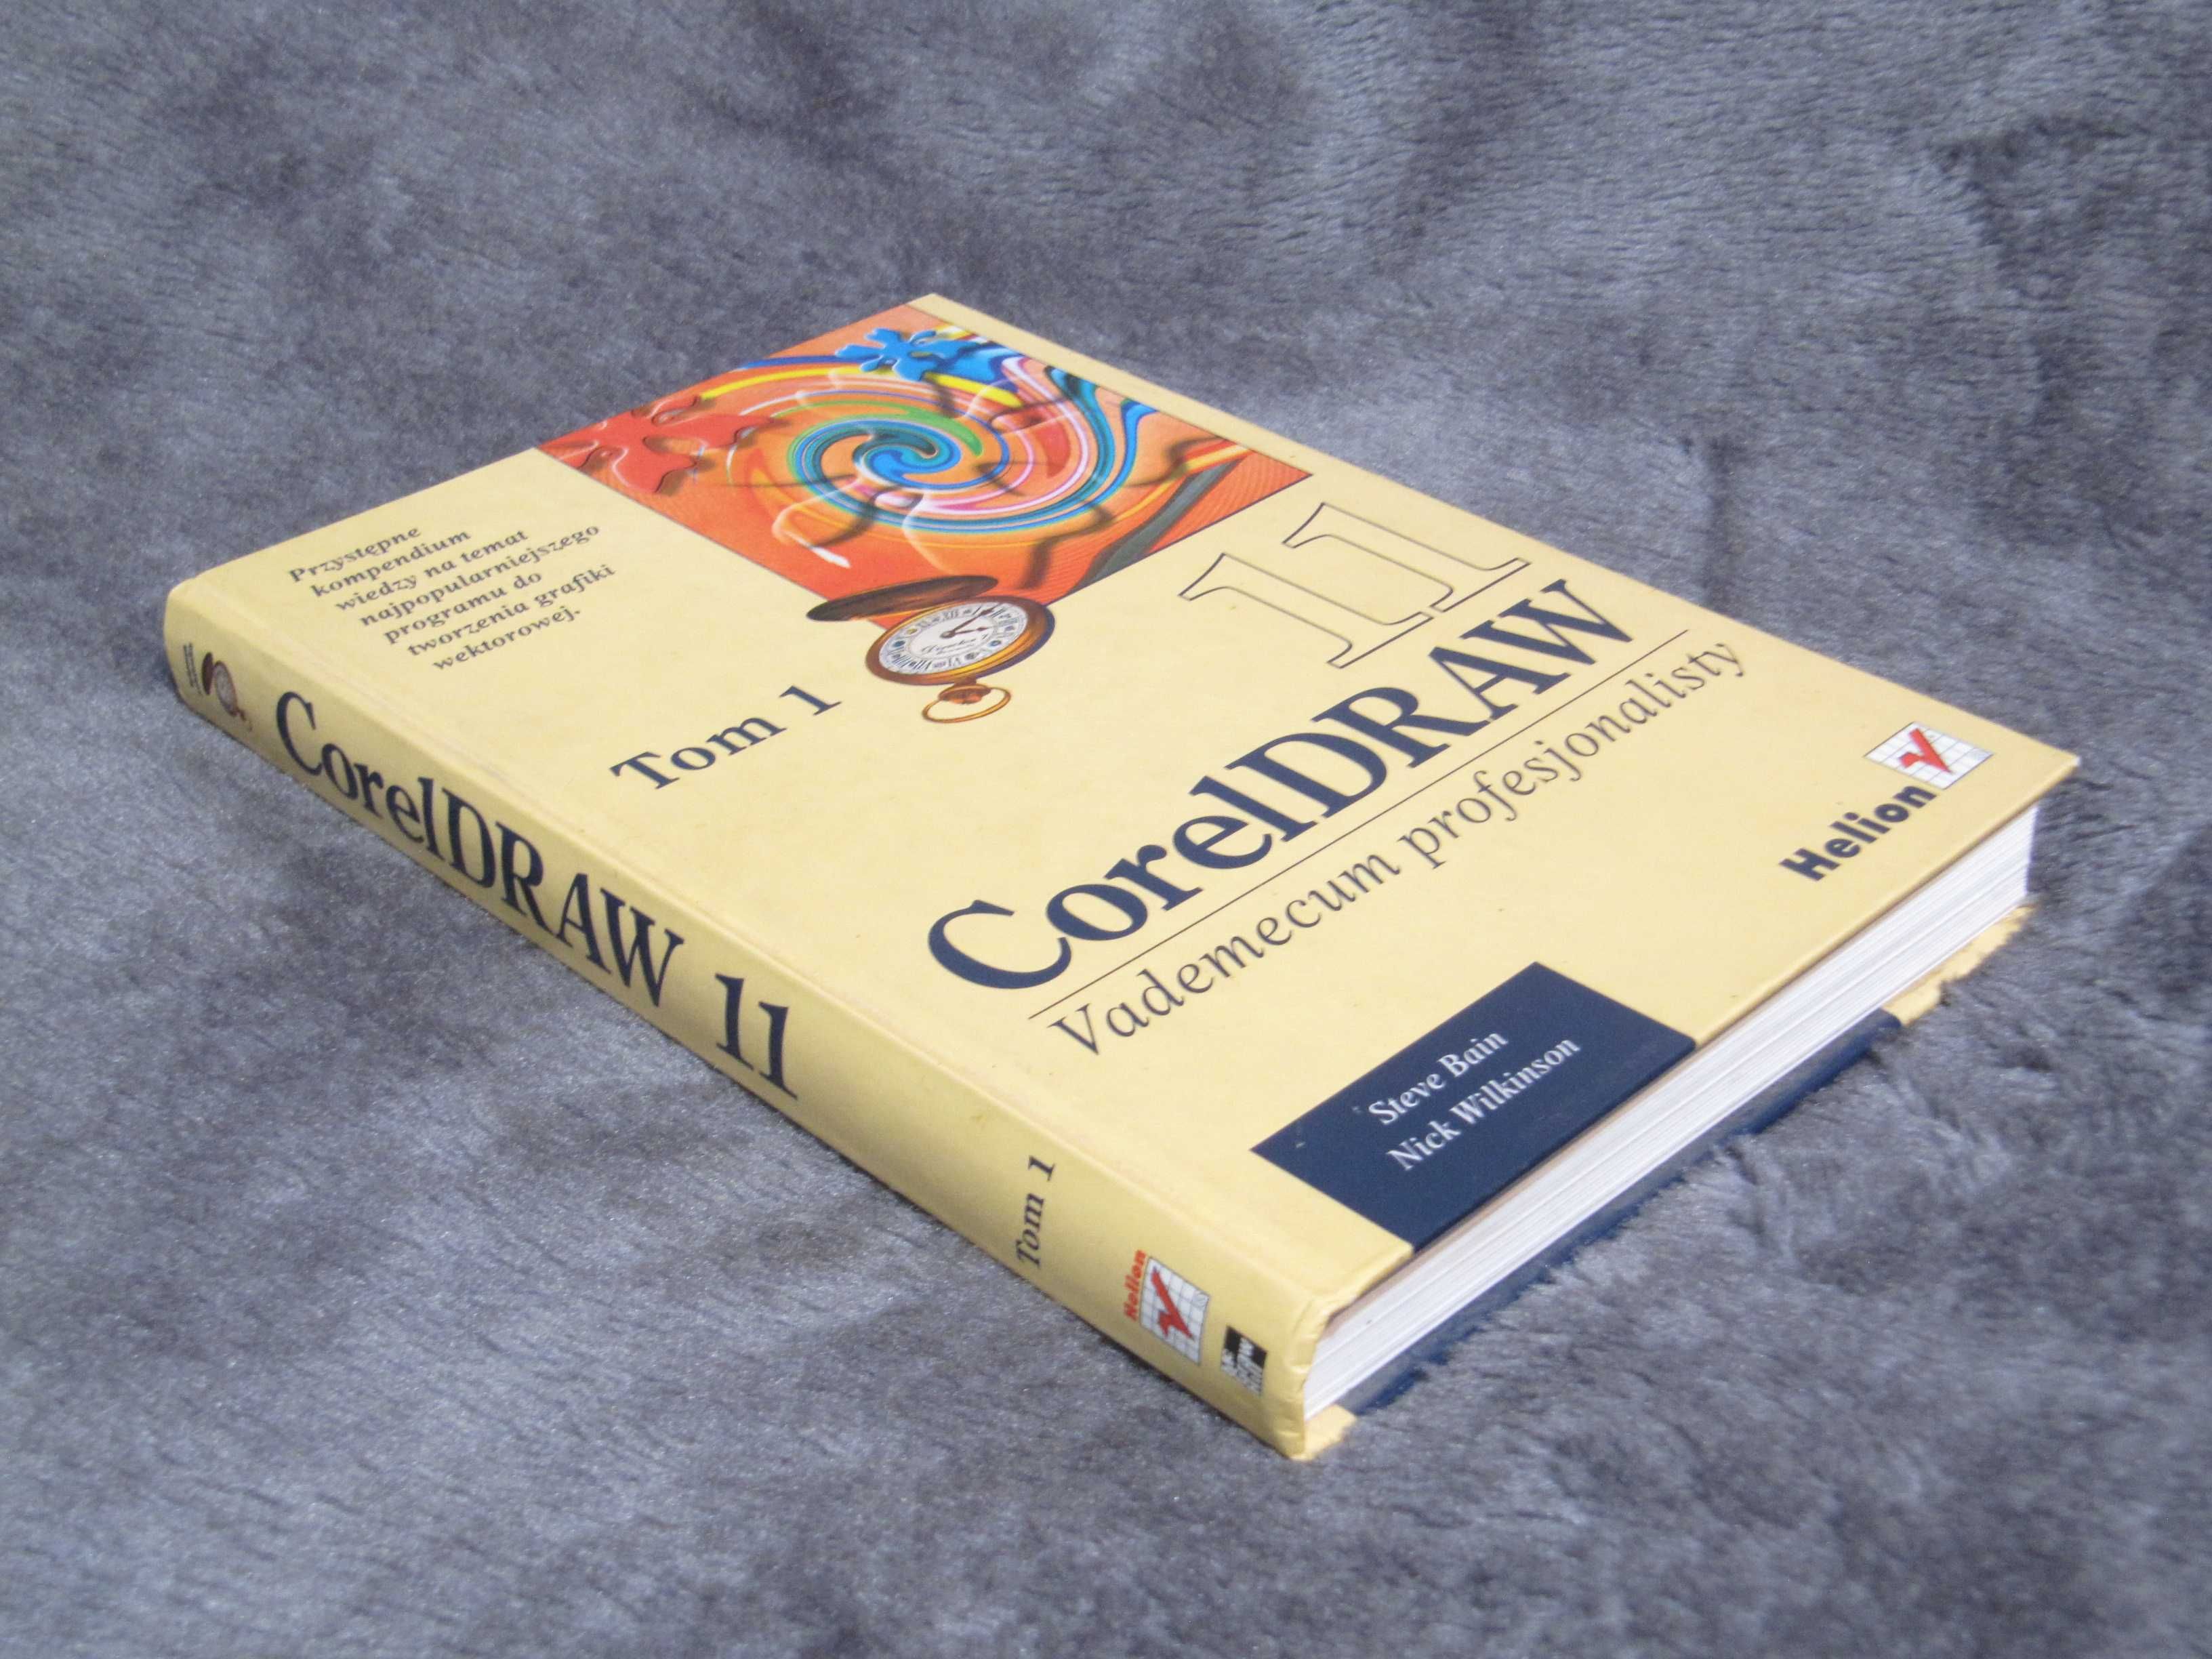 Książka podręcznik Coreldraw 11 - Możliwość zmiany na kup i wysyłki